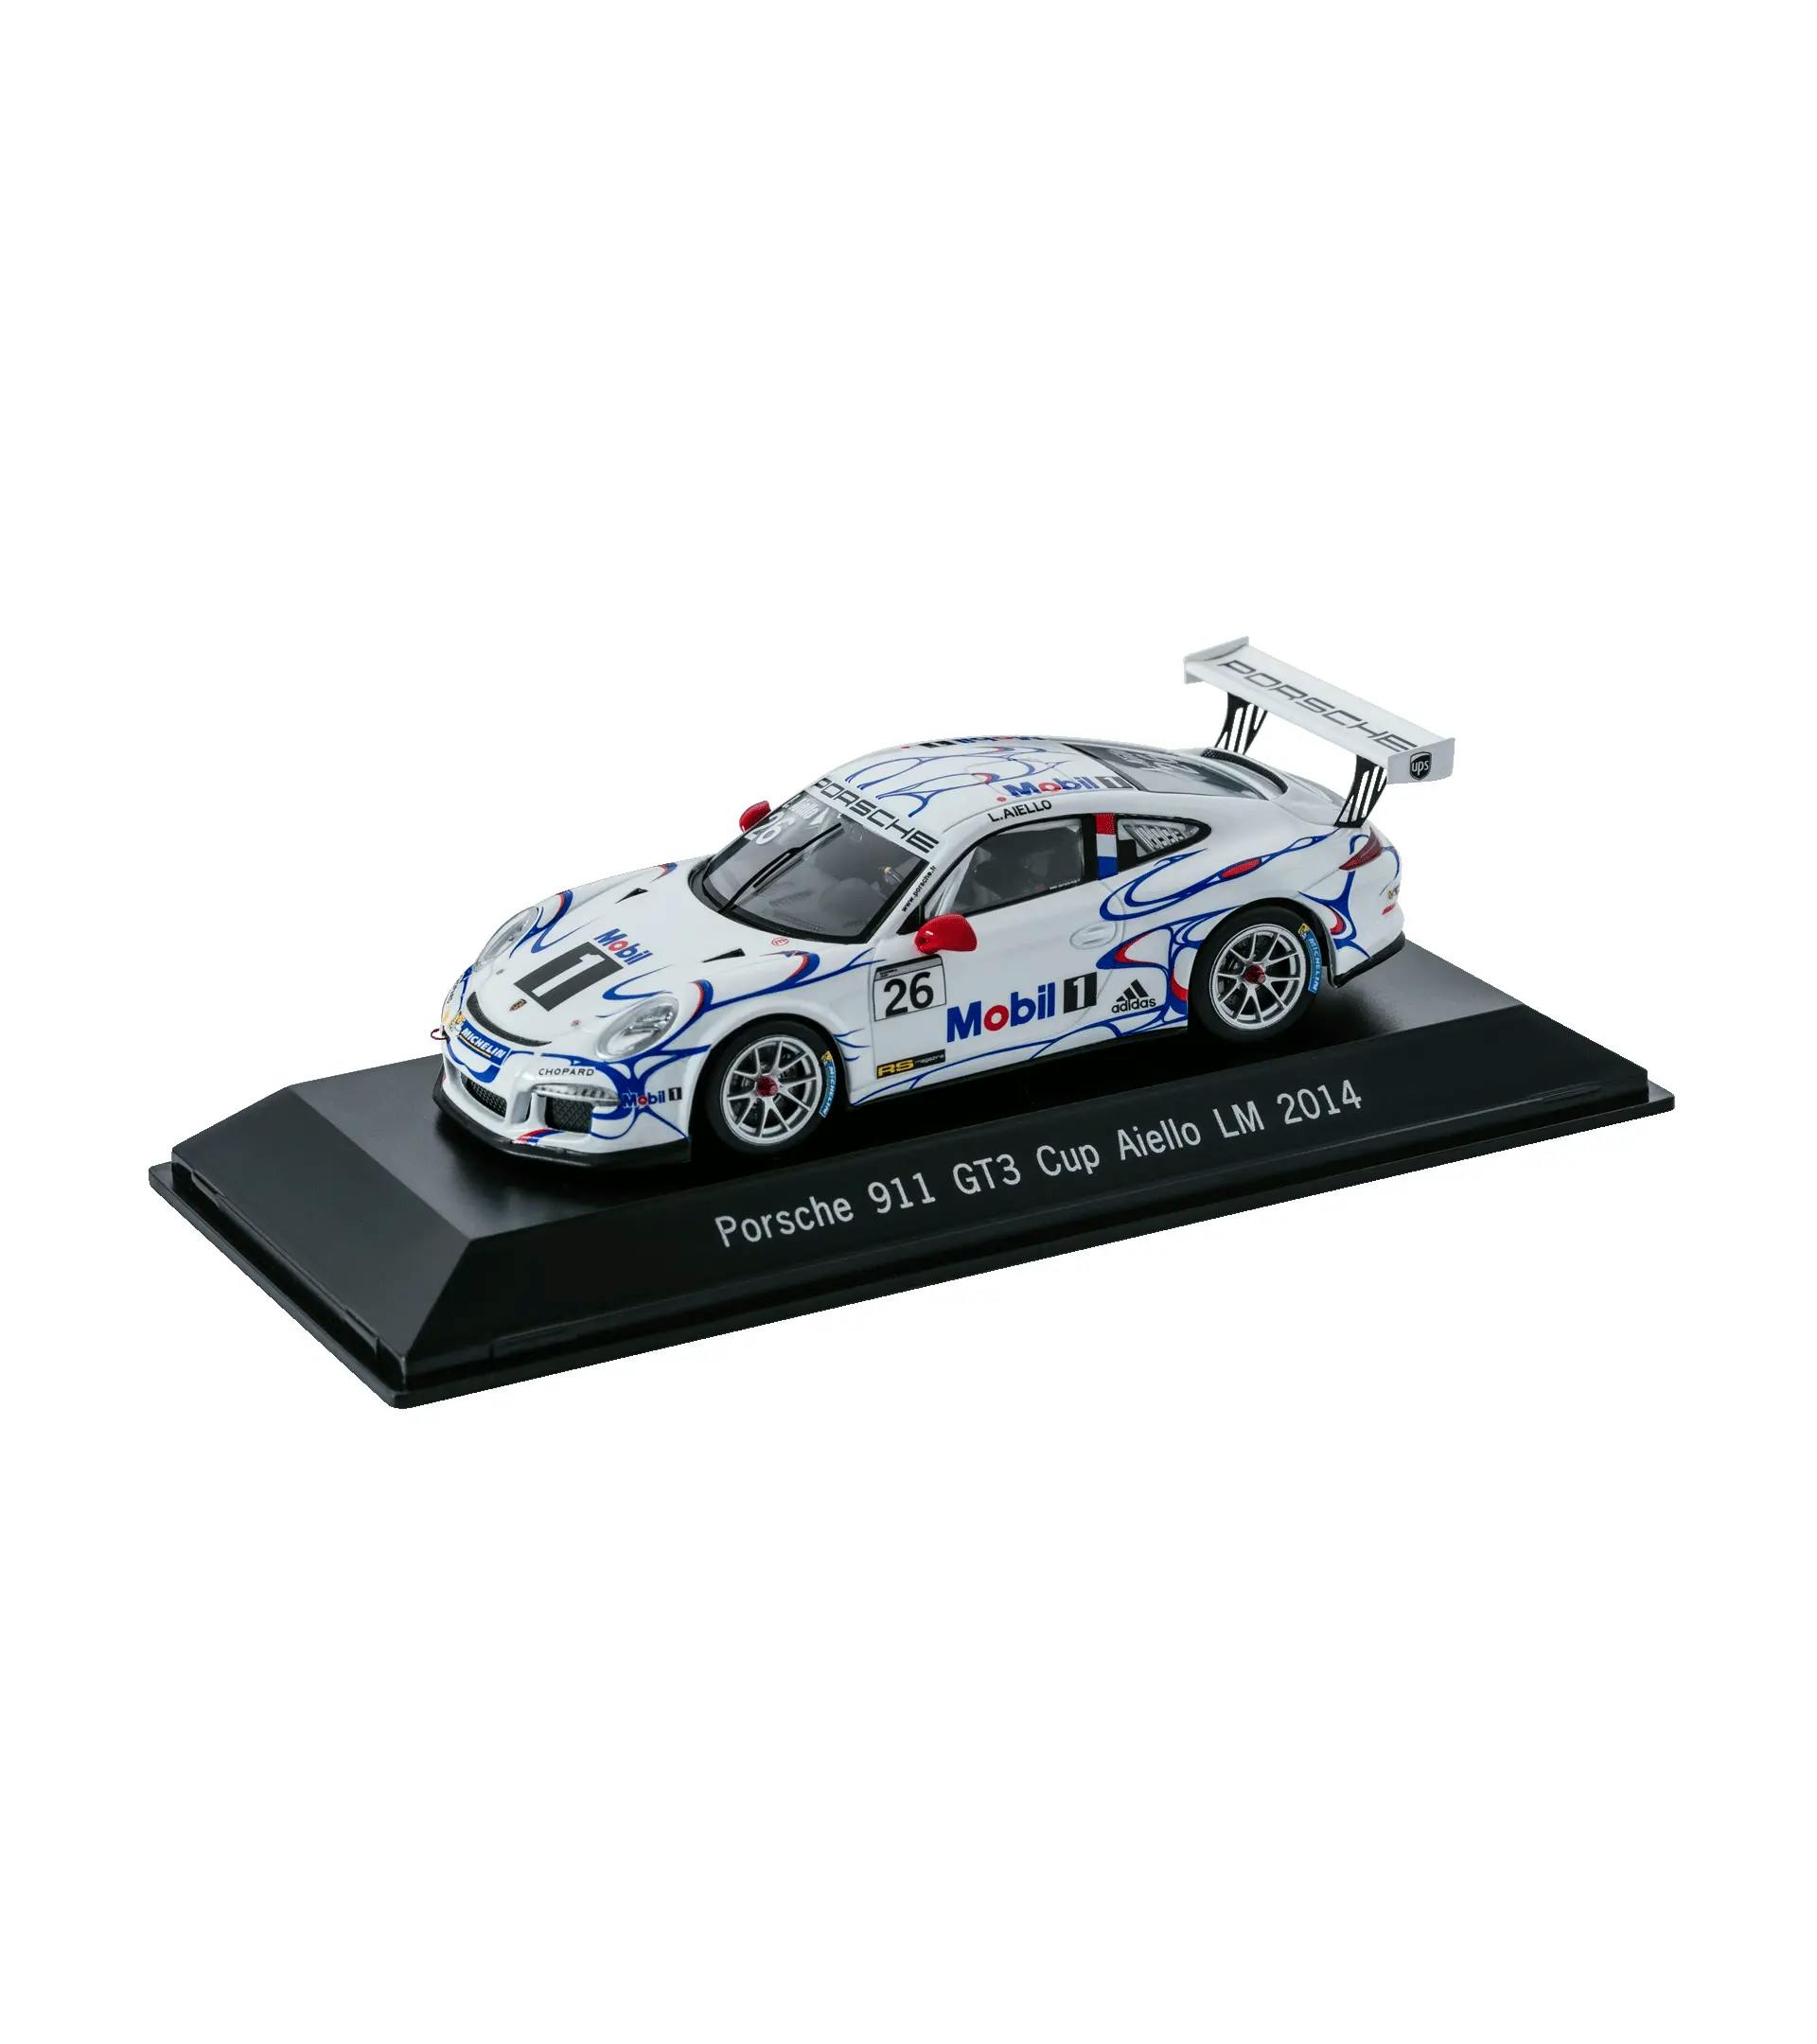 Porsche 911 GT3 Cup - Le Mans 2014 1